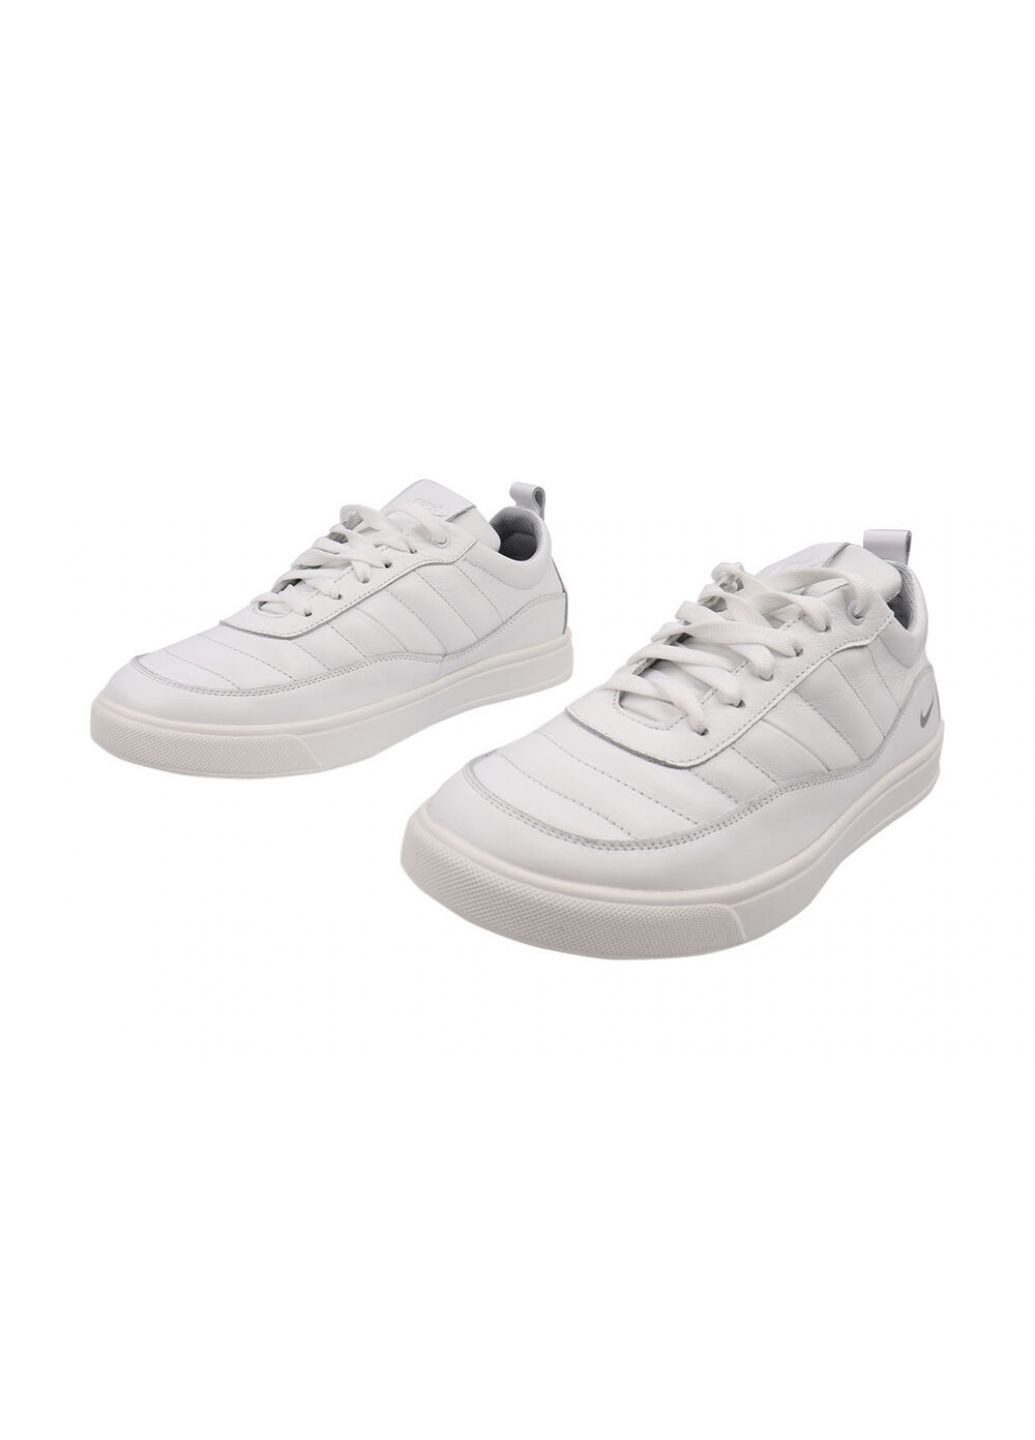 Белые туфли спорт мужские из натуральной кожи, на низком ходу, на шнуровке, белые, украина Road style 65-21DTC